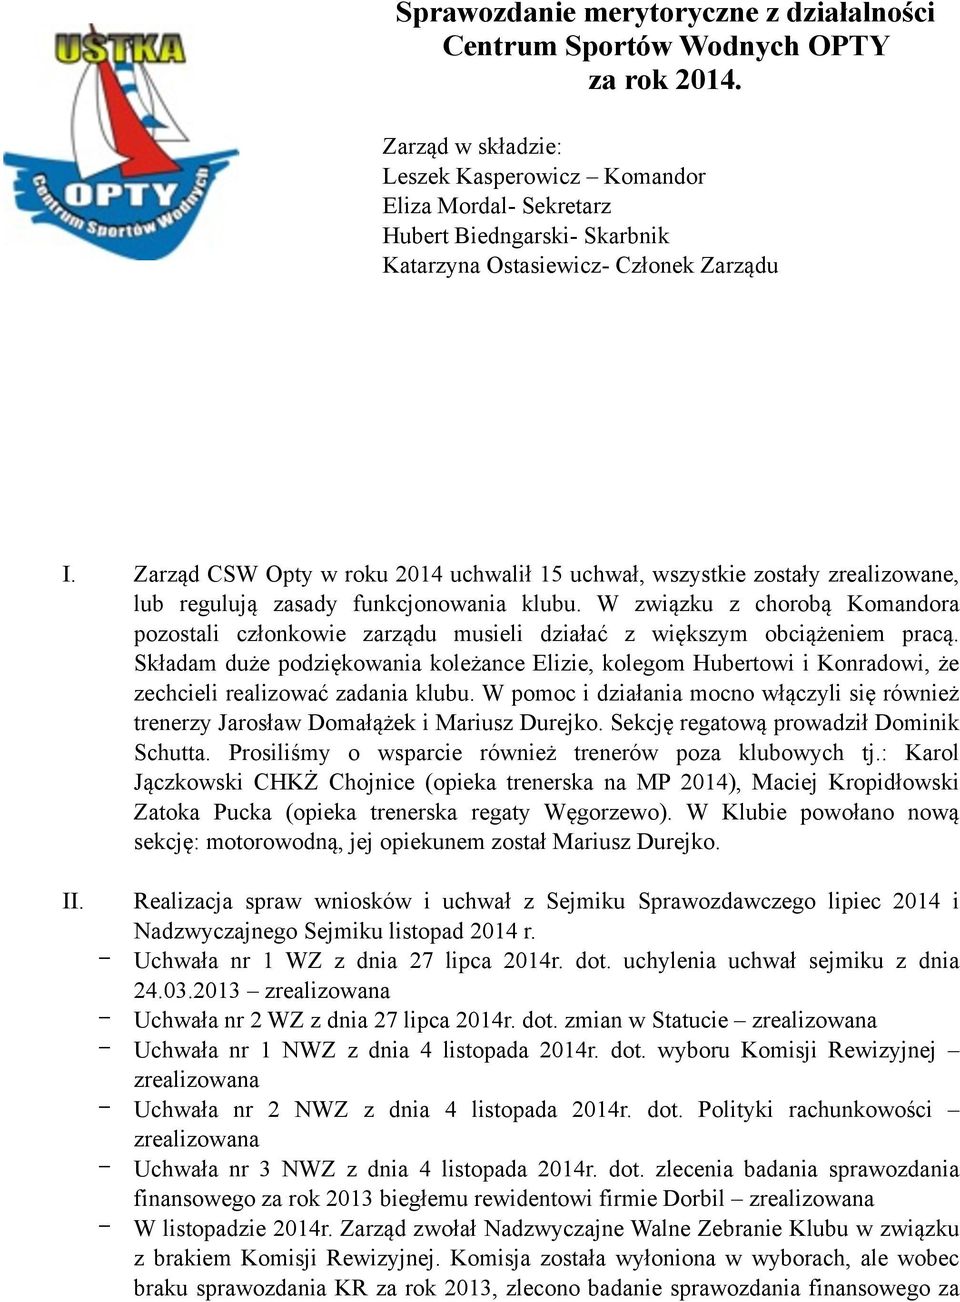 Zarząd CSW Opty w roku 2014 uchwalił 15 uchwał, wszystkie zostały zrealizowane, lub regulują zasady funkcjonowania klubu.